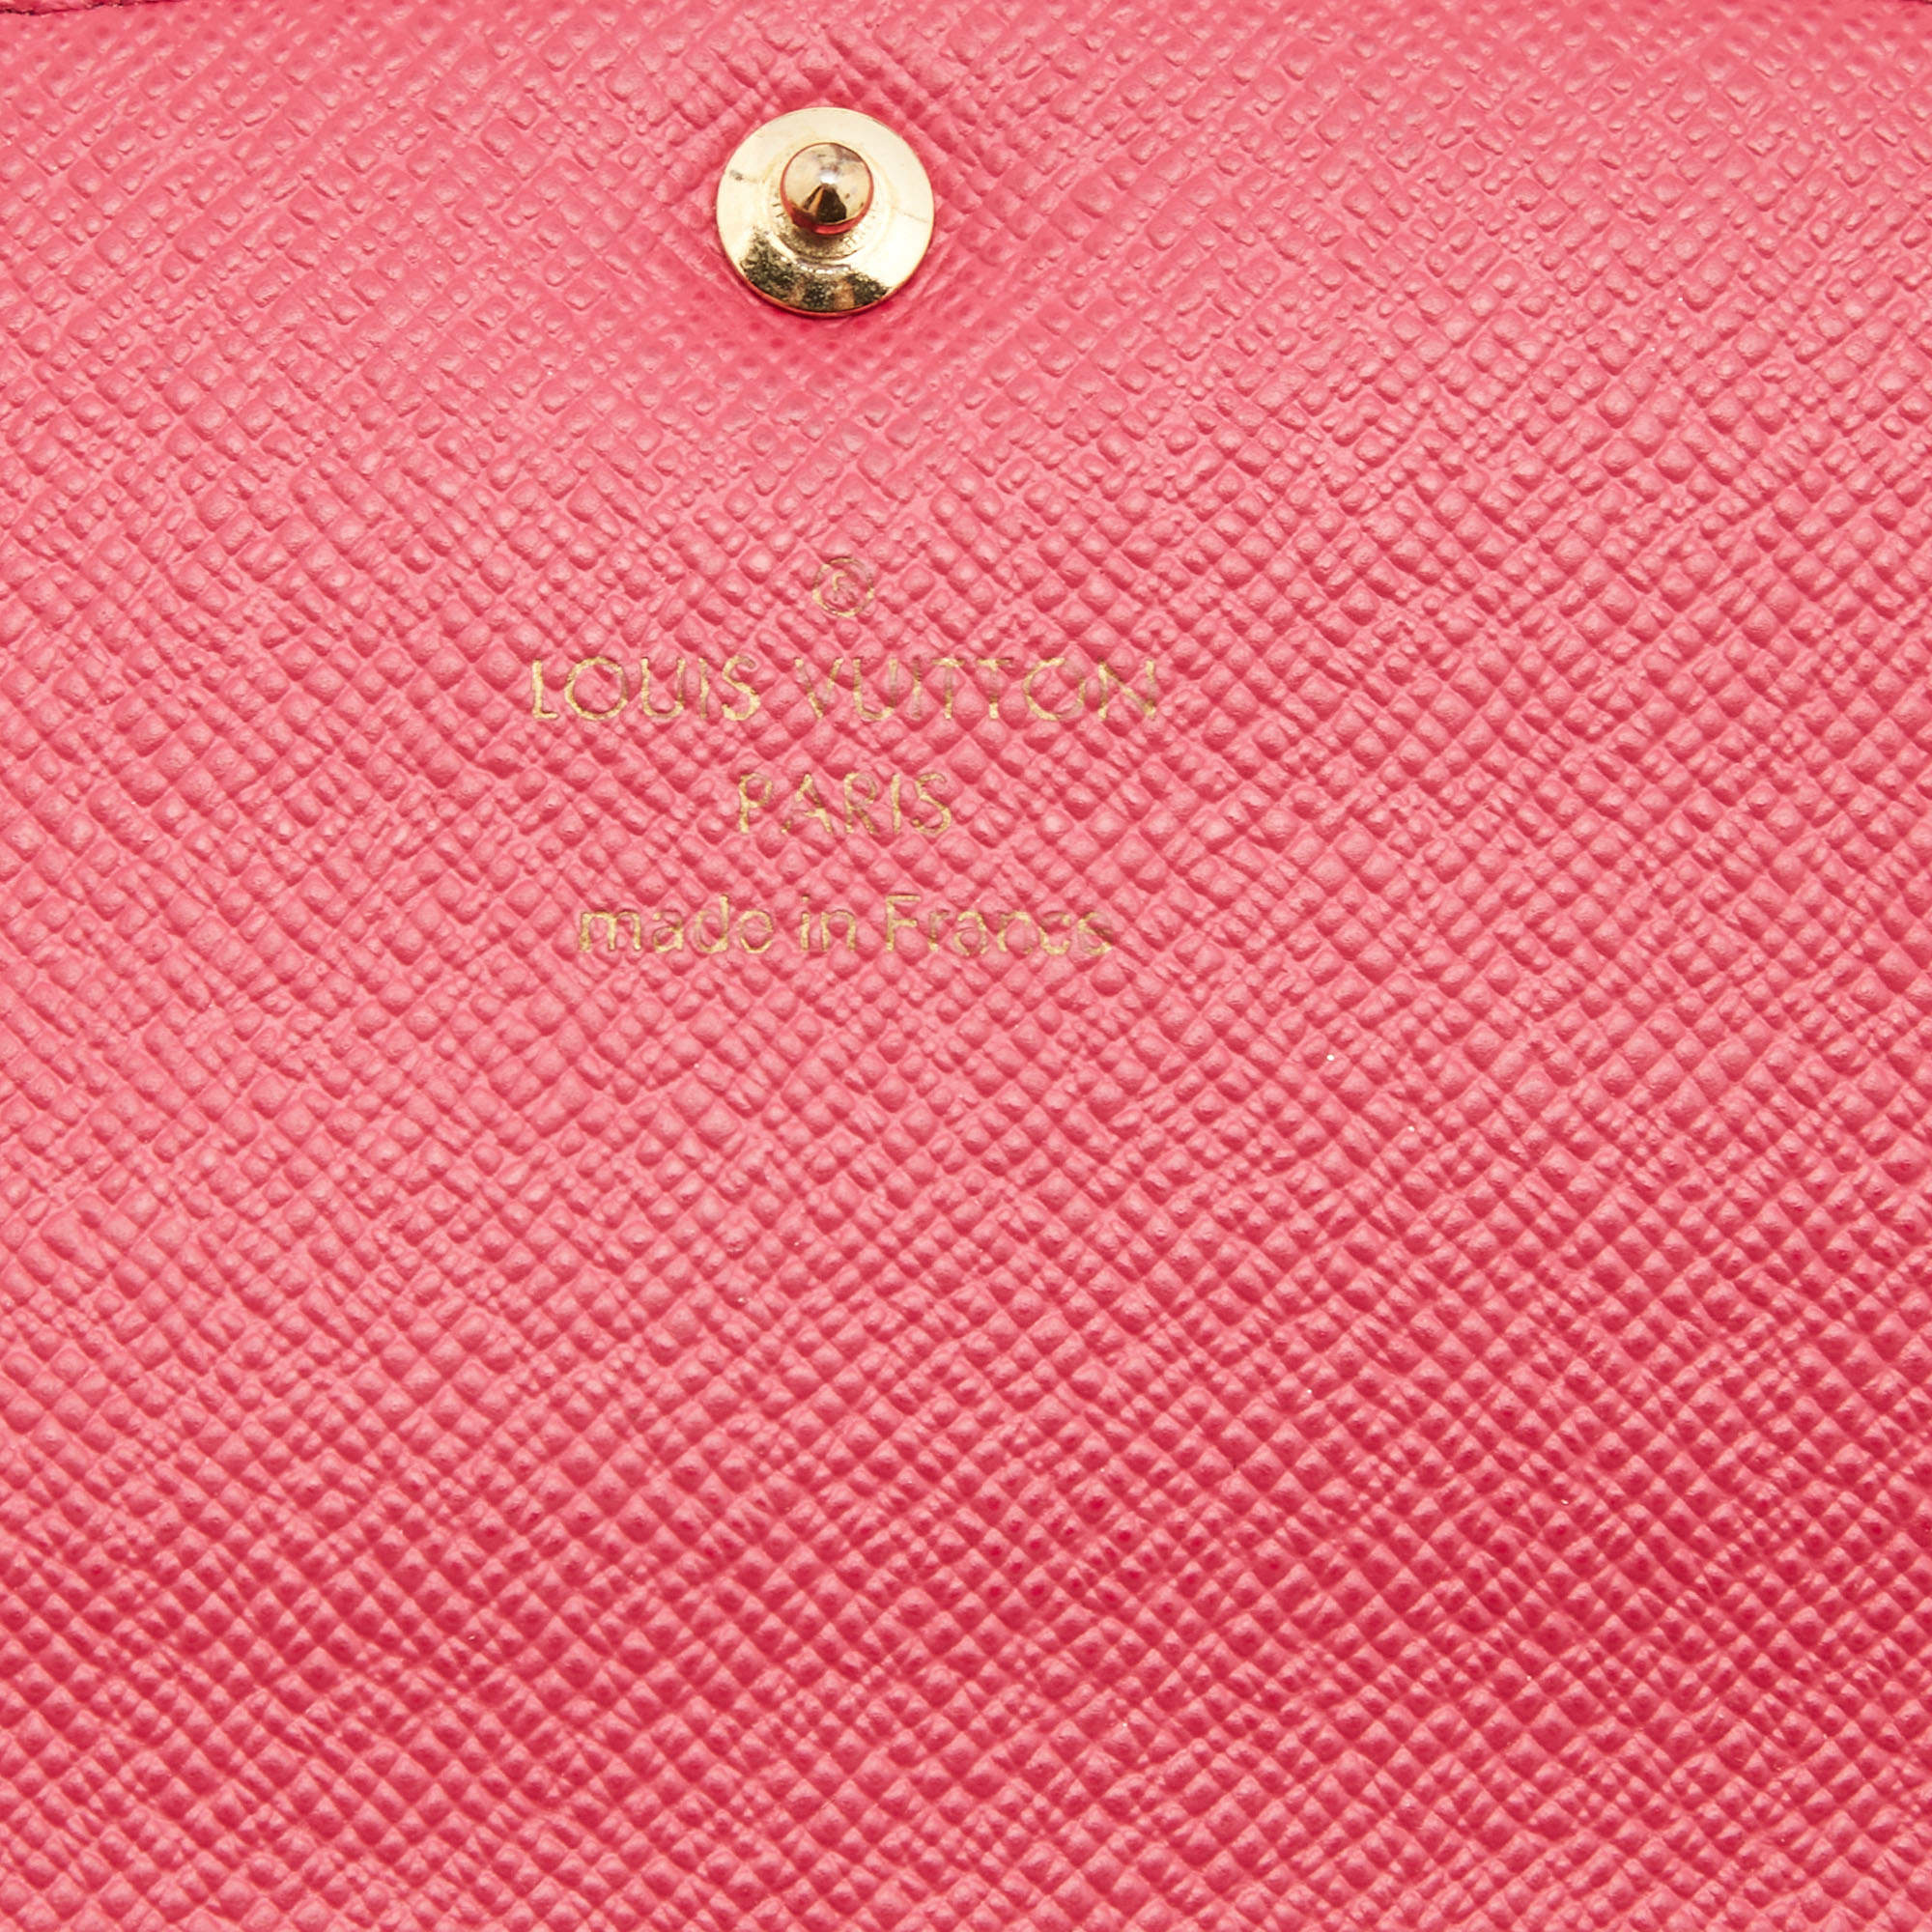 Louis Vuitton Emilie Wallet Damier Ebene – Luxie Club